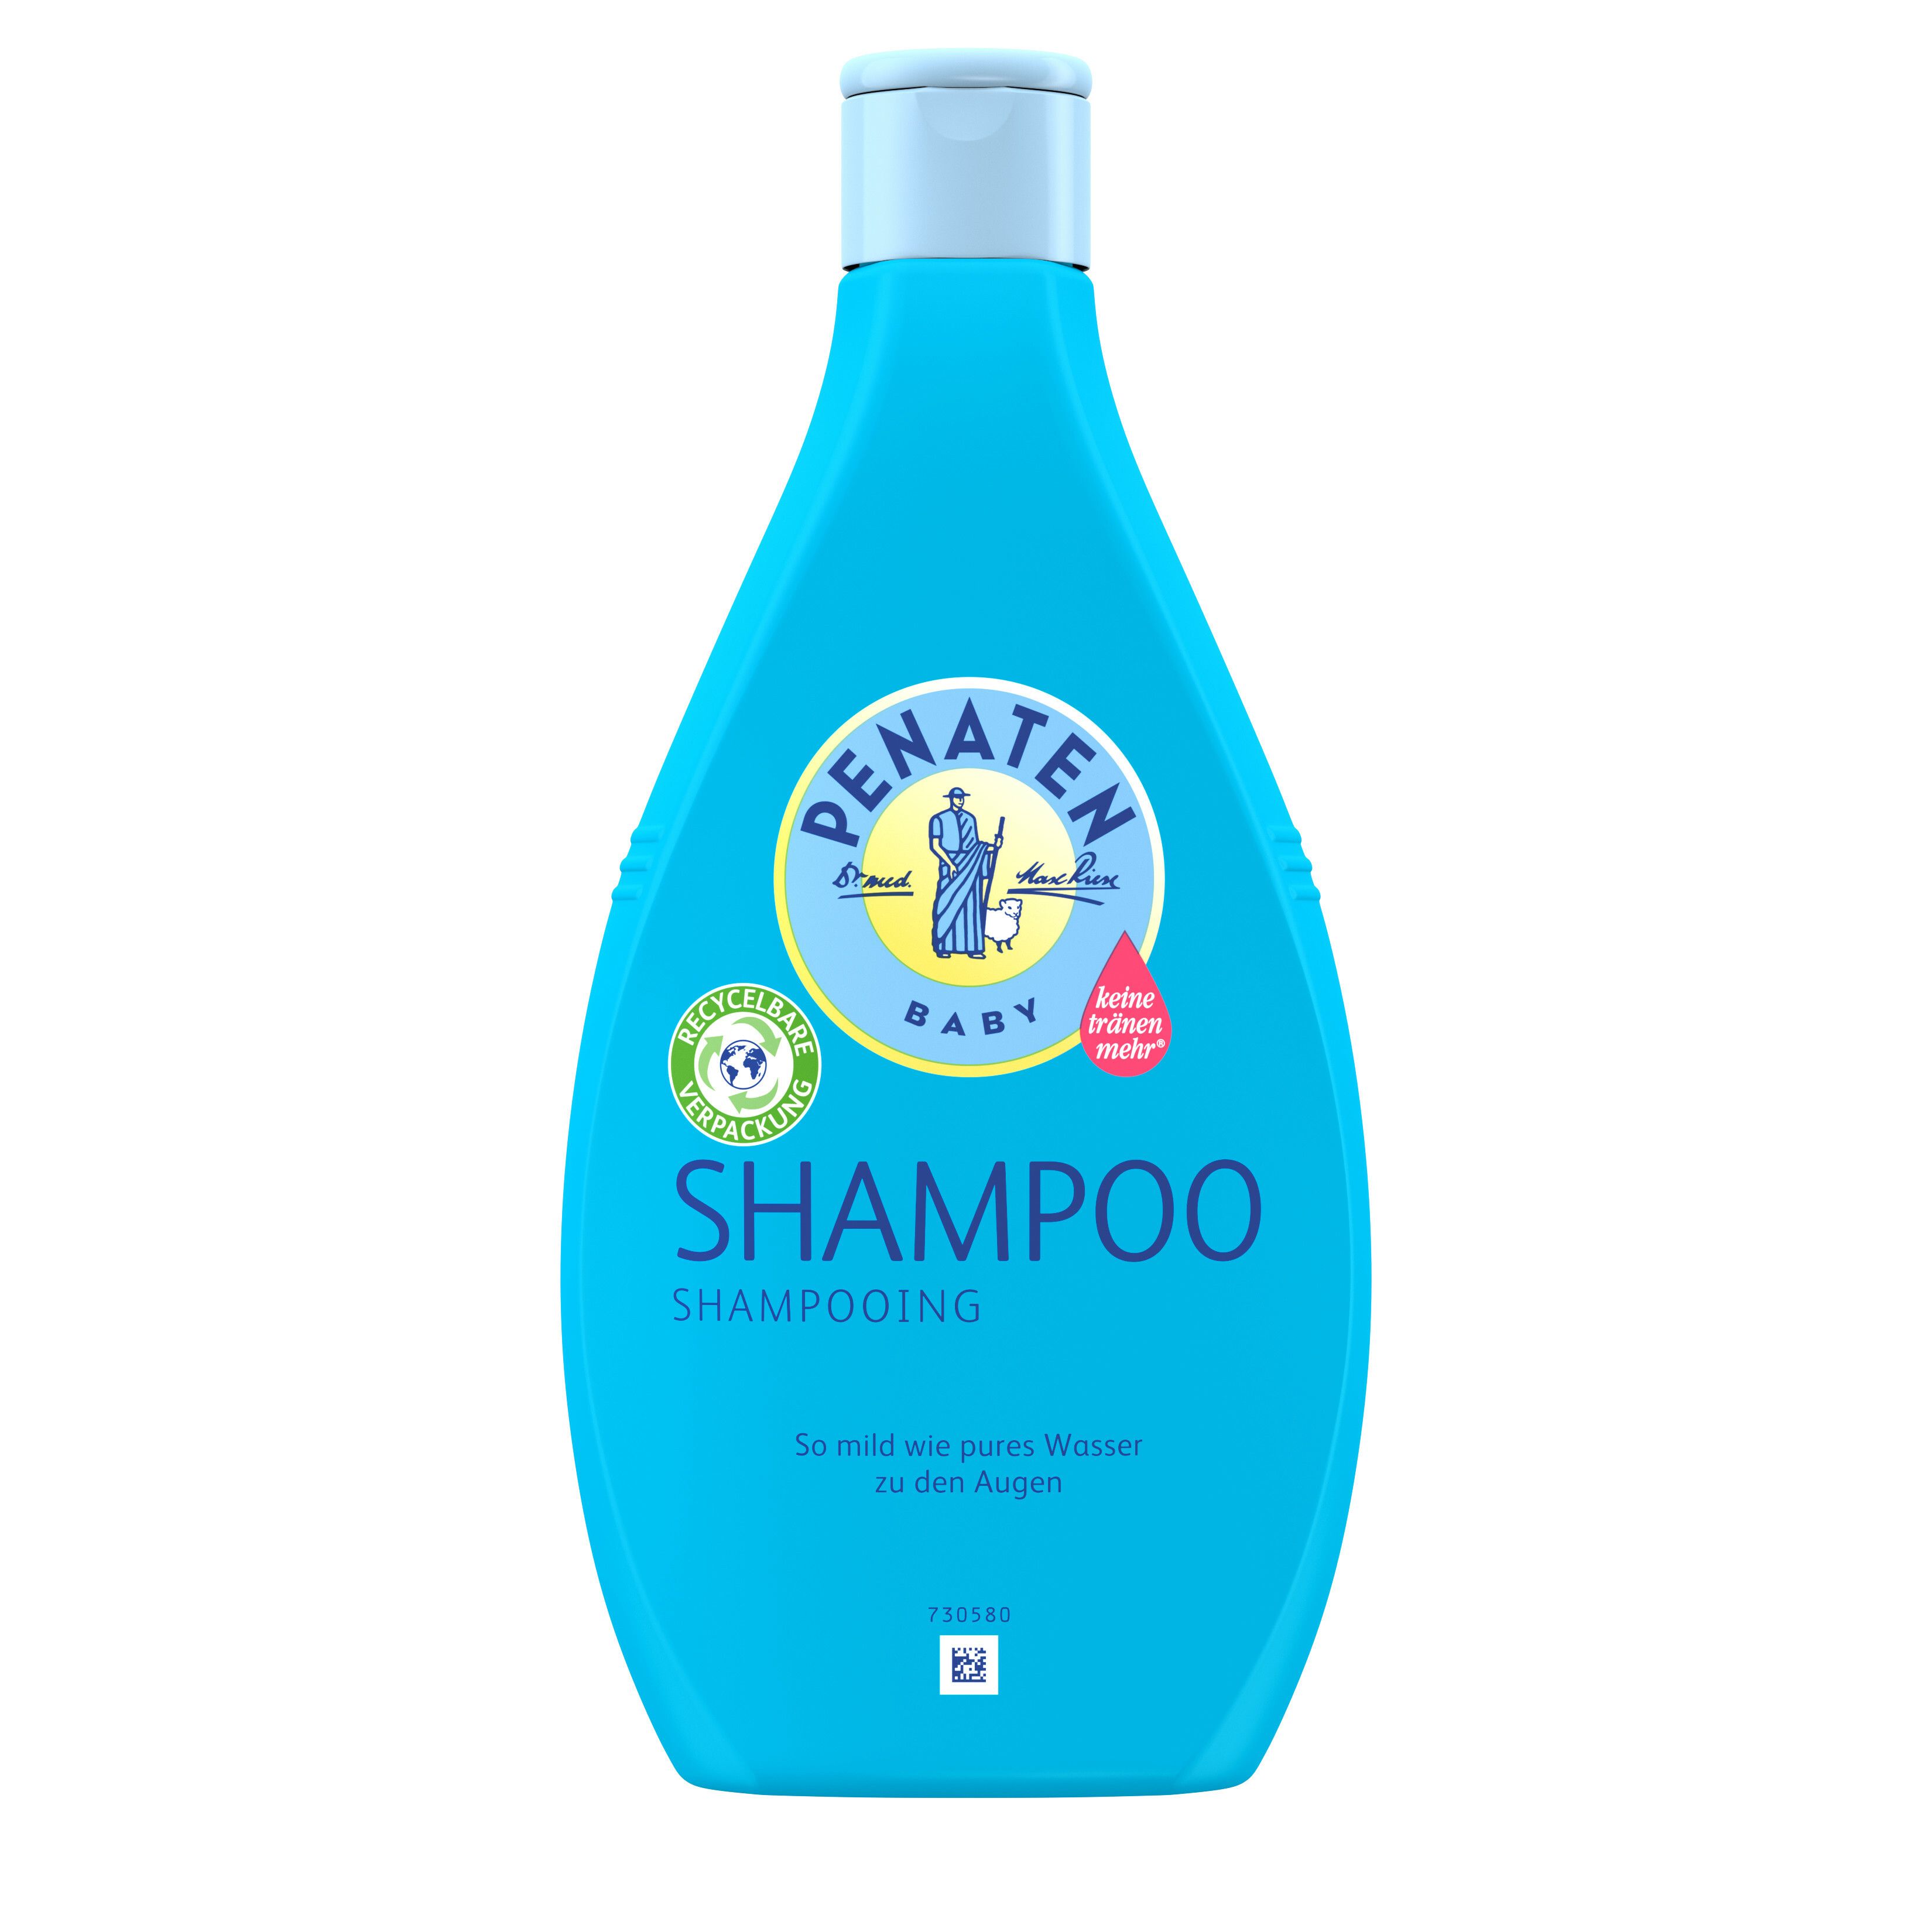 PENATEN® BABY Shampoo